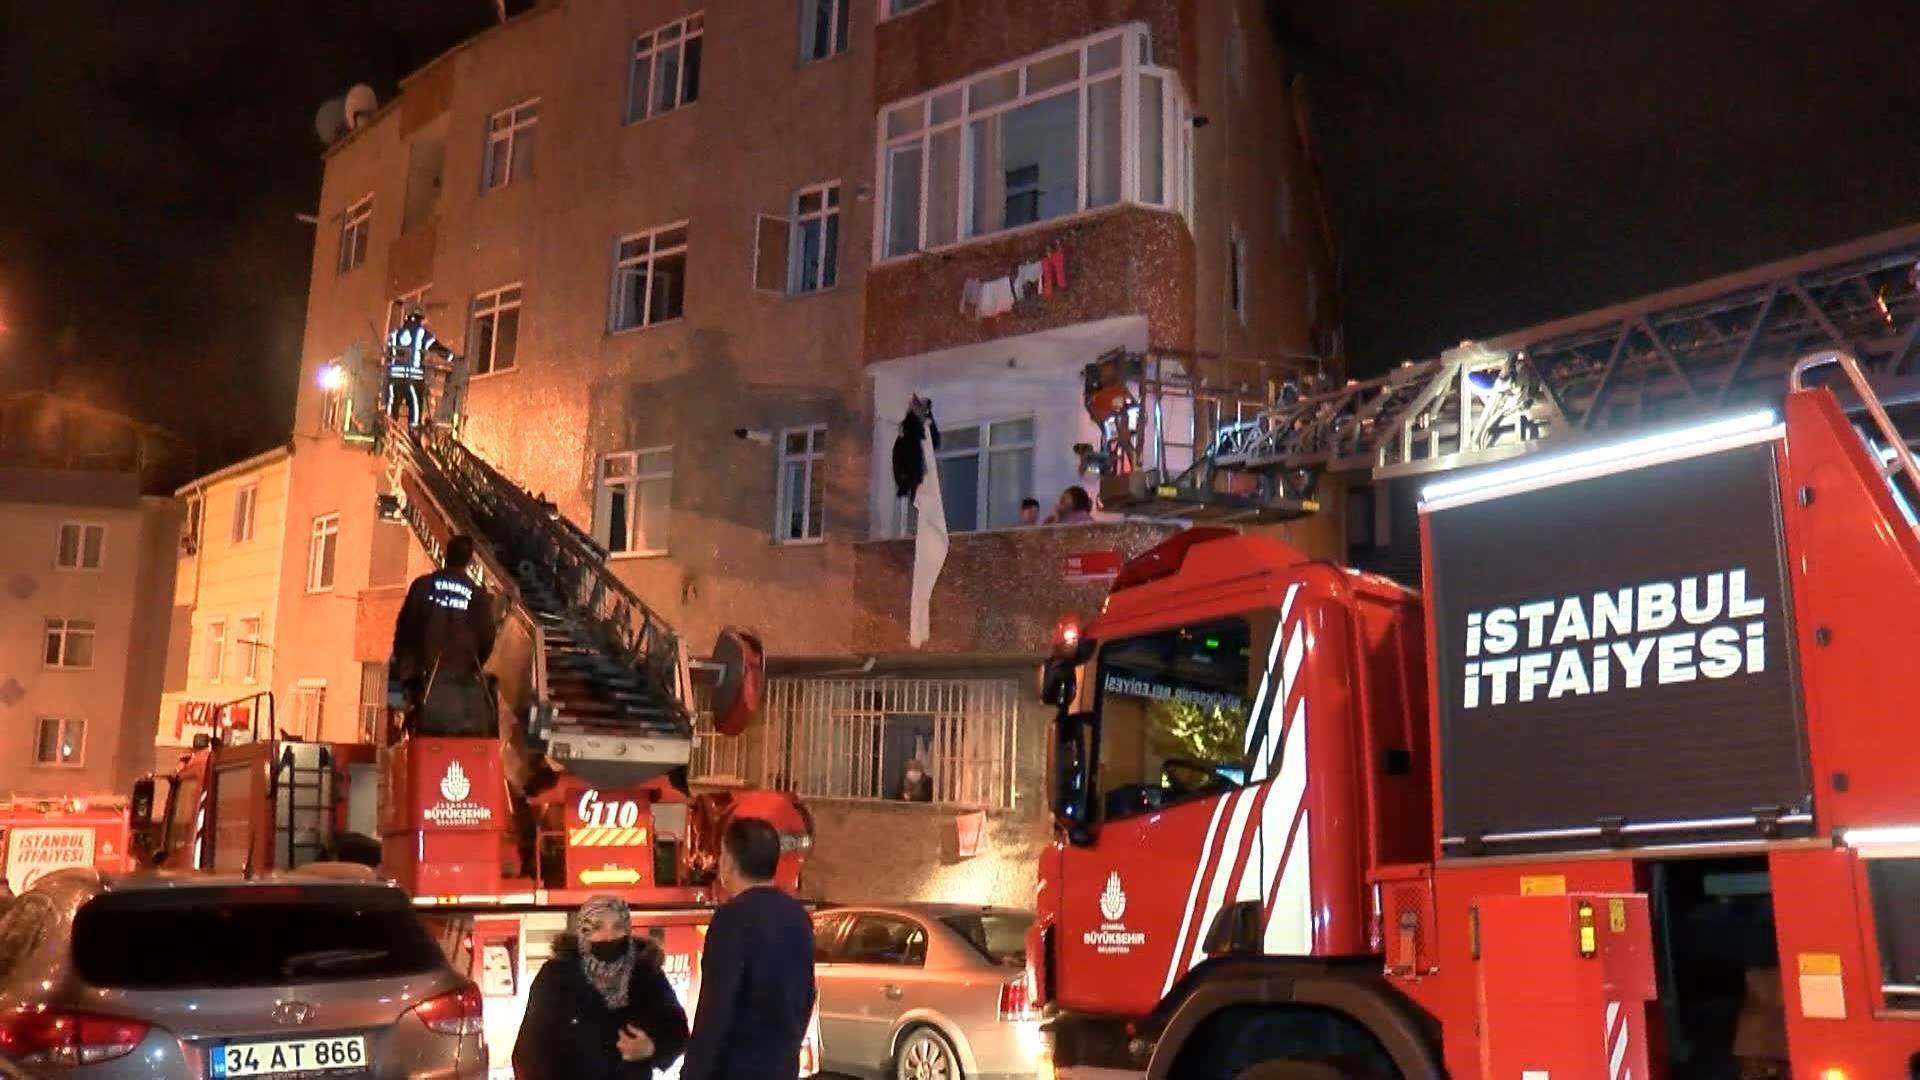 Gaziosmanpaşada bina girişindeki elektrik panosunda yangın çıktı: 12 kişiyi itfaiye kurtardı